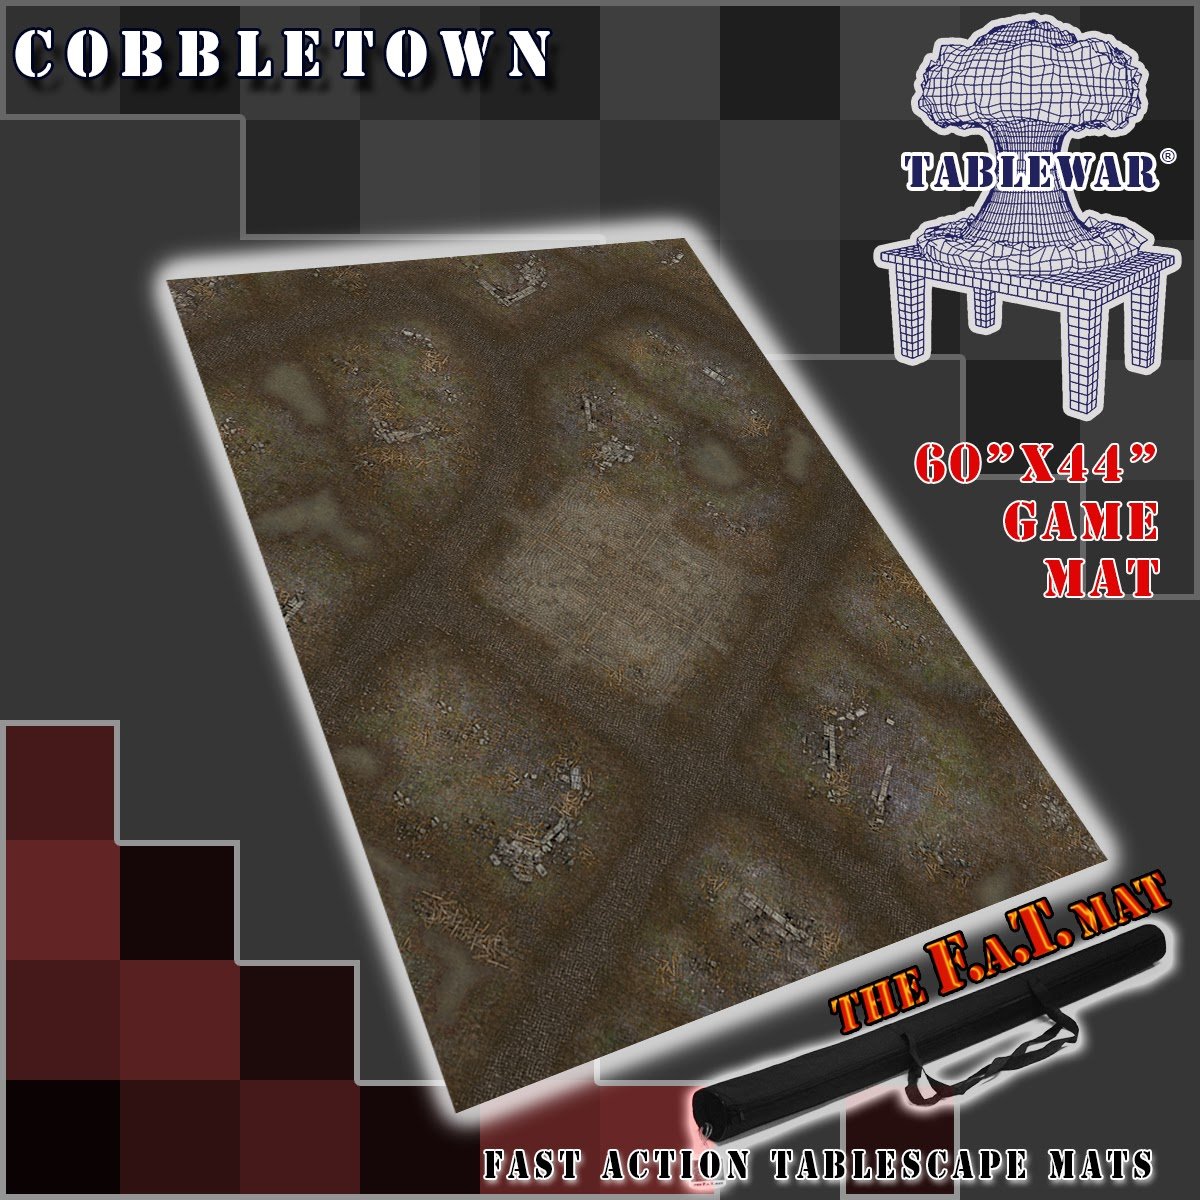 F.A.T. Mats: Winter Cobble Town 60"X44" 